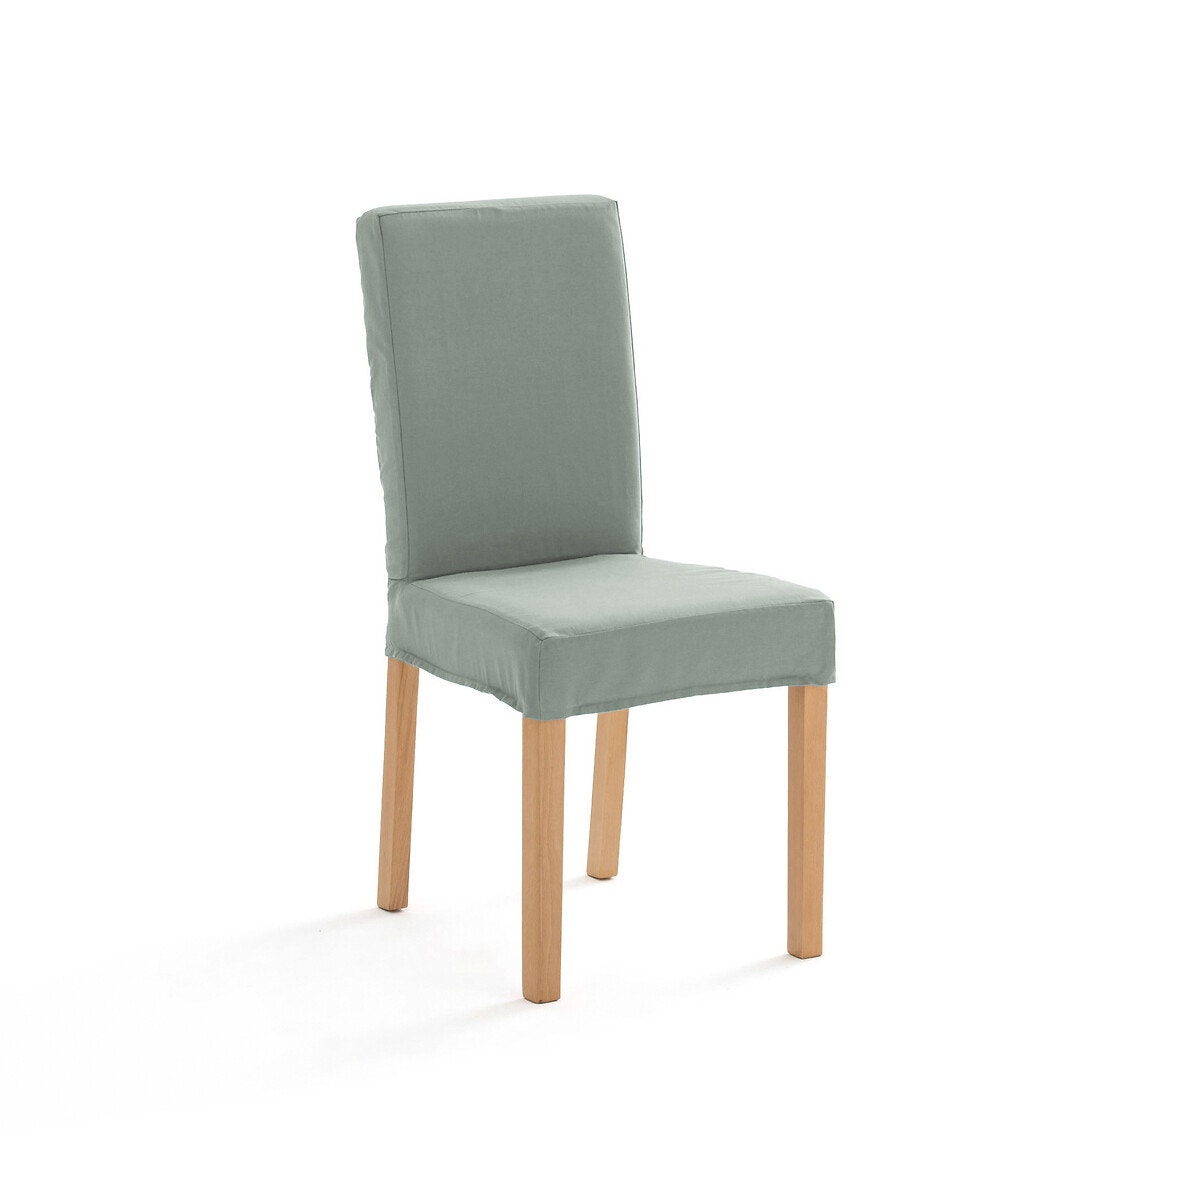 Σπίτι > Λευκά είδη > Ύφασμα, διακόσμηση > Καλύμματα καναπέ, καρέκλας > Καλύμματα καρέκλας Βαμβακερό κάλυμμα καρέκλας One size